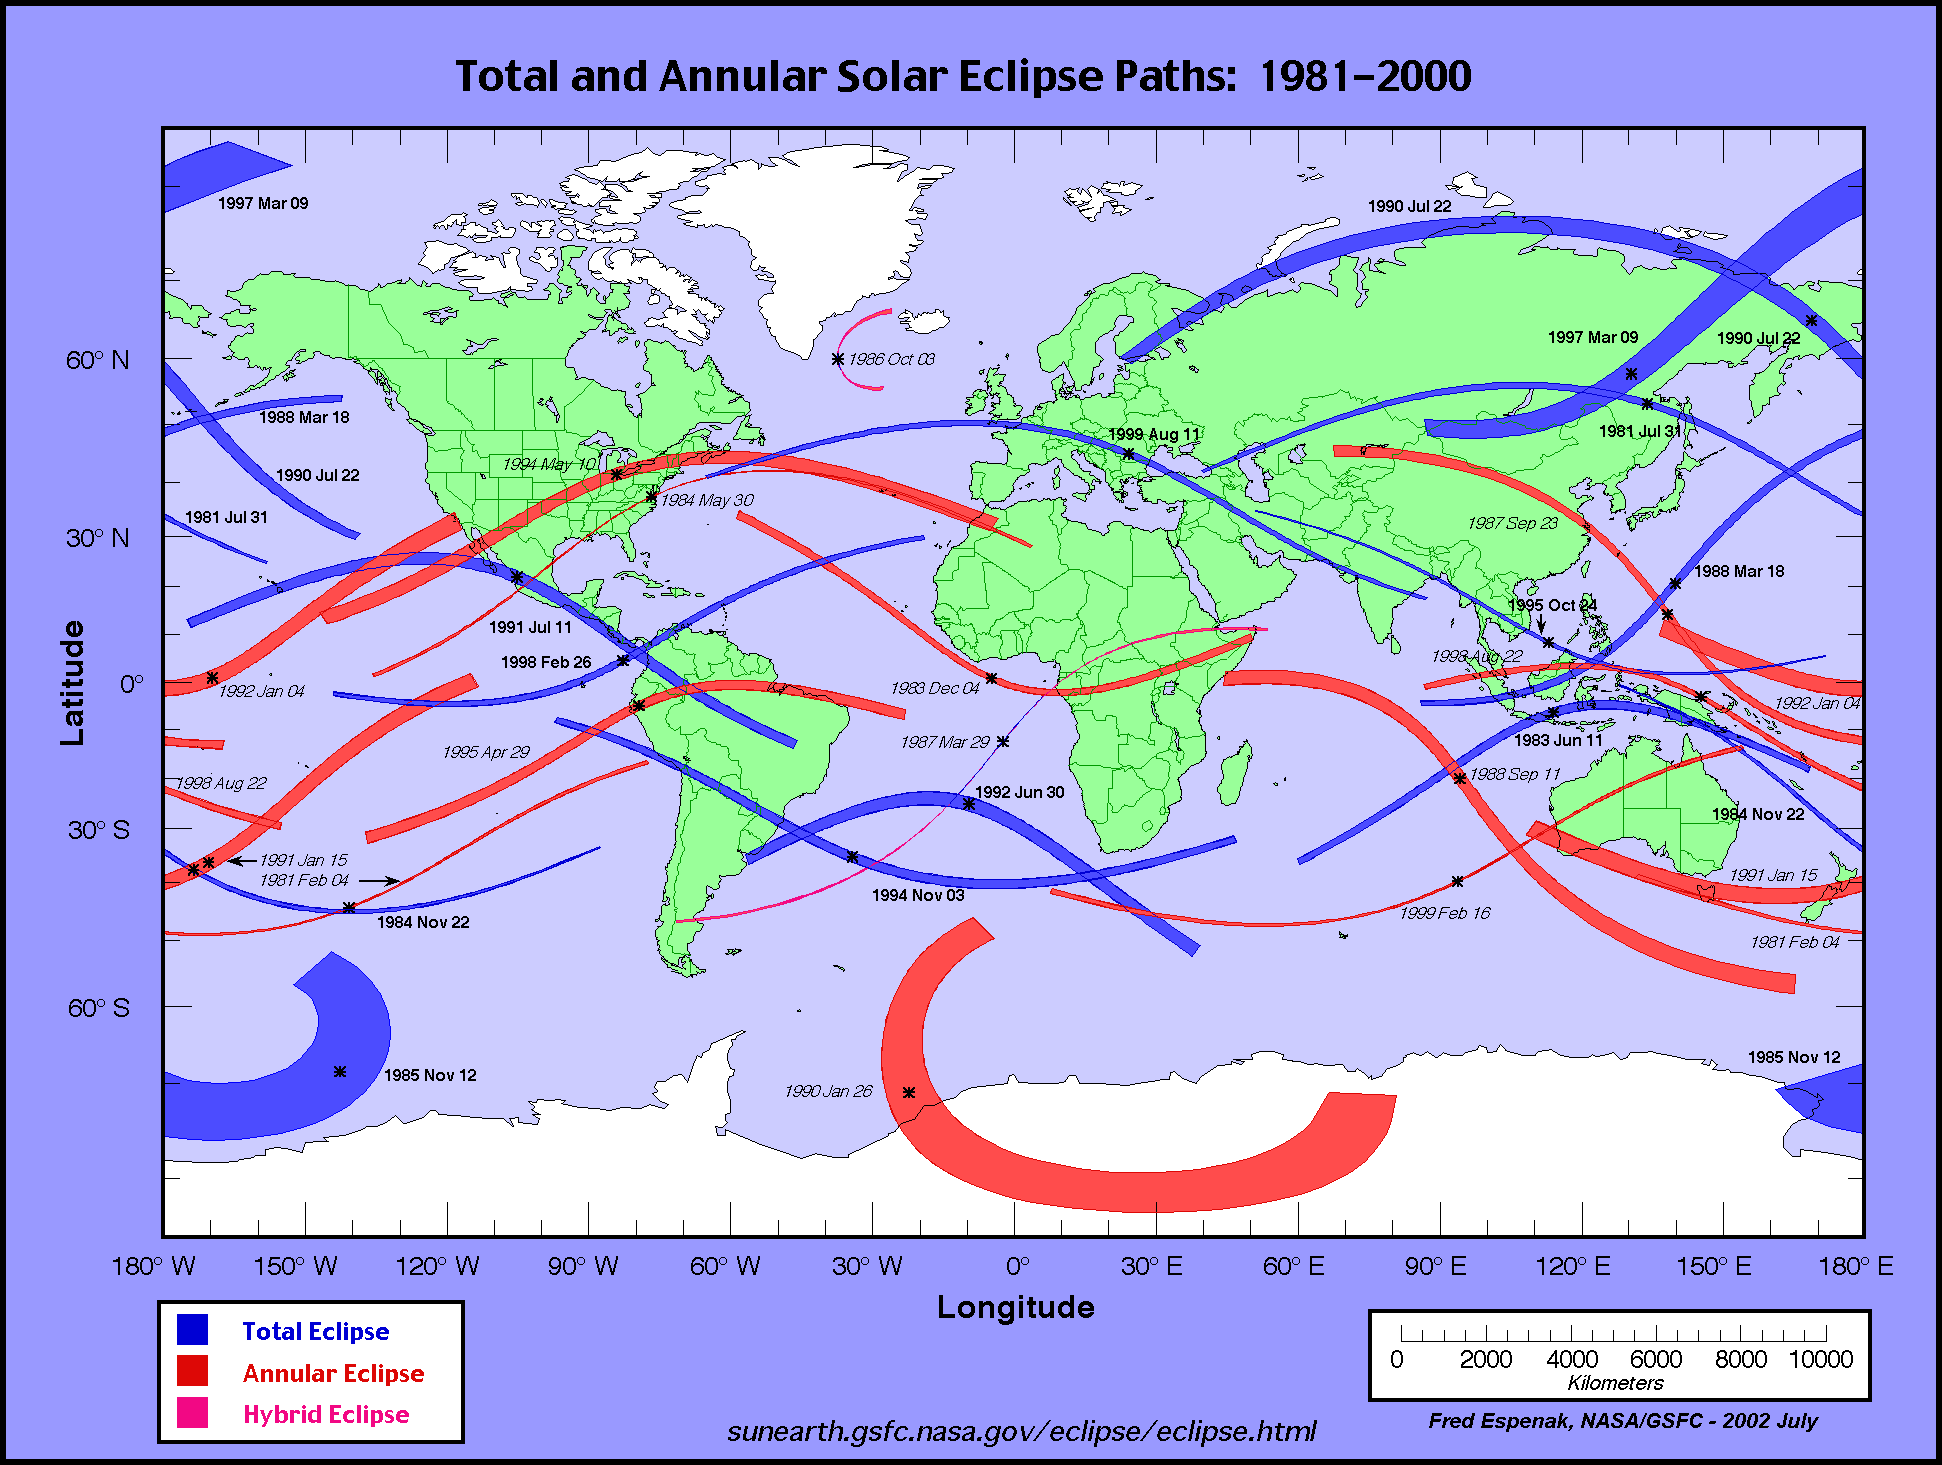 calendario e mappe eclissi solari totali e anulari dal 1981 al 2000